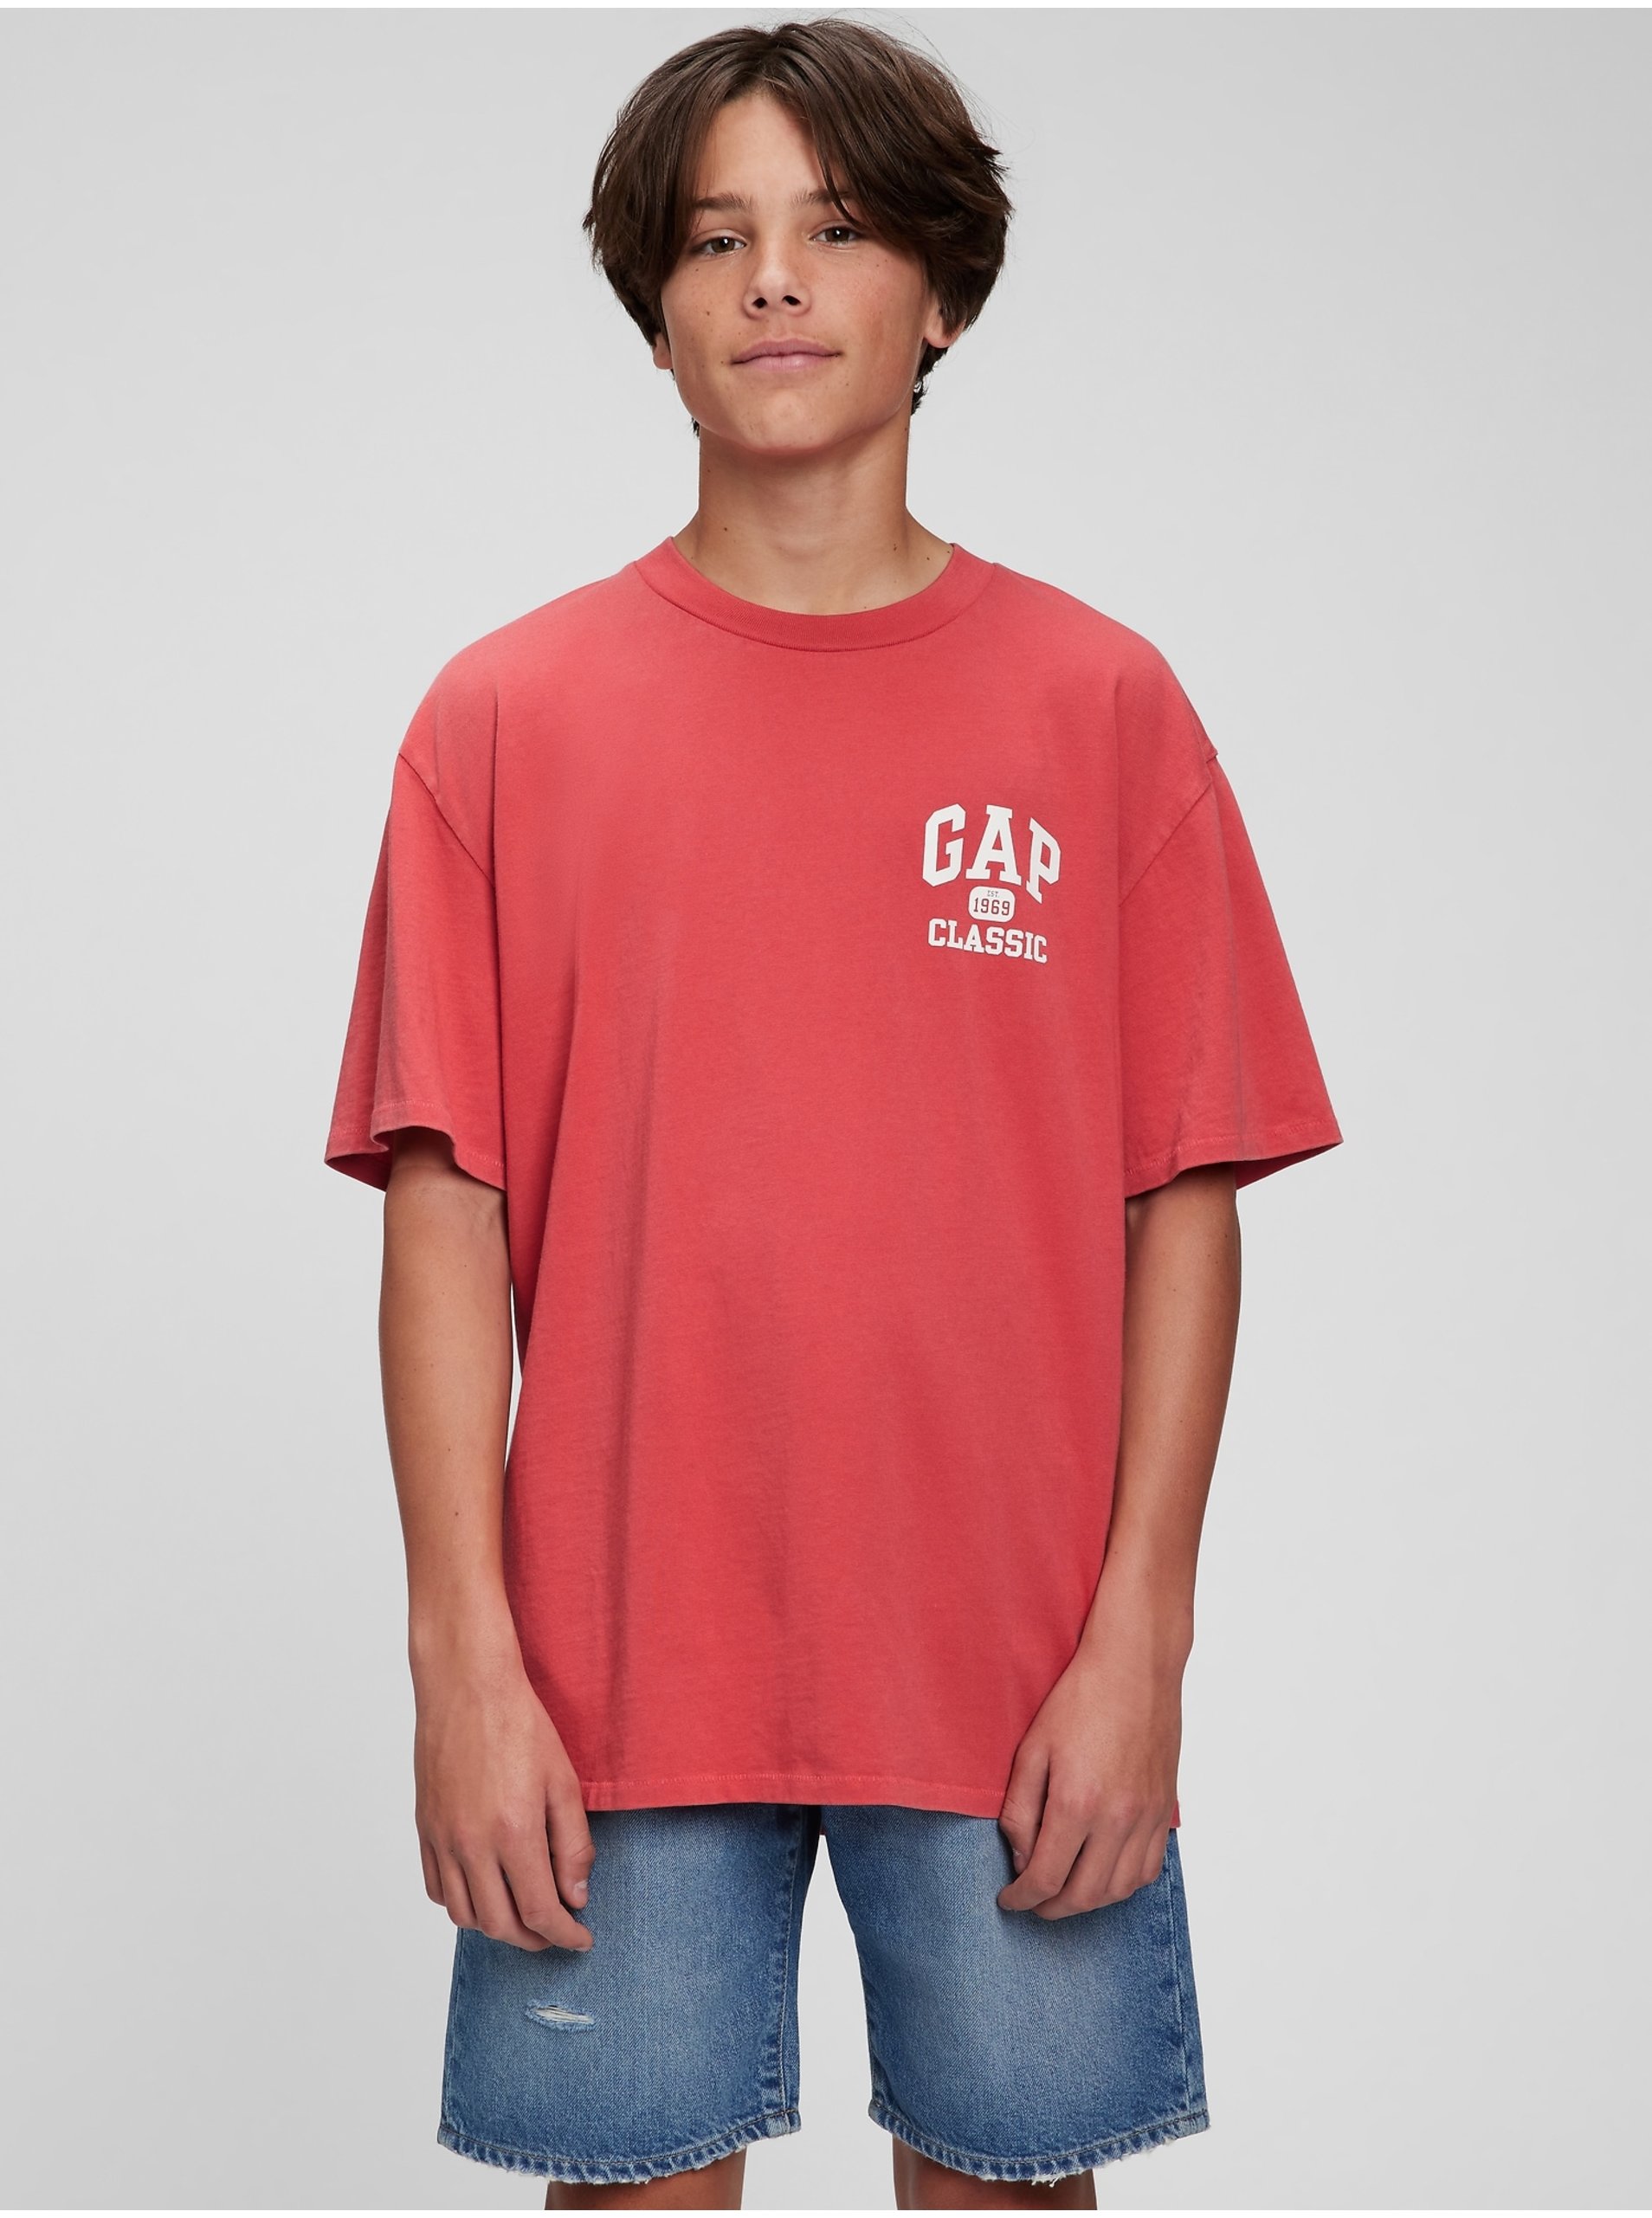 Lacno Červené chlapčenské tričko Teen organic logo Classic GAP